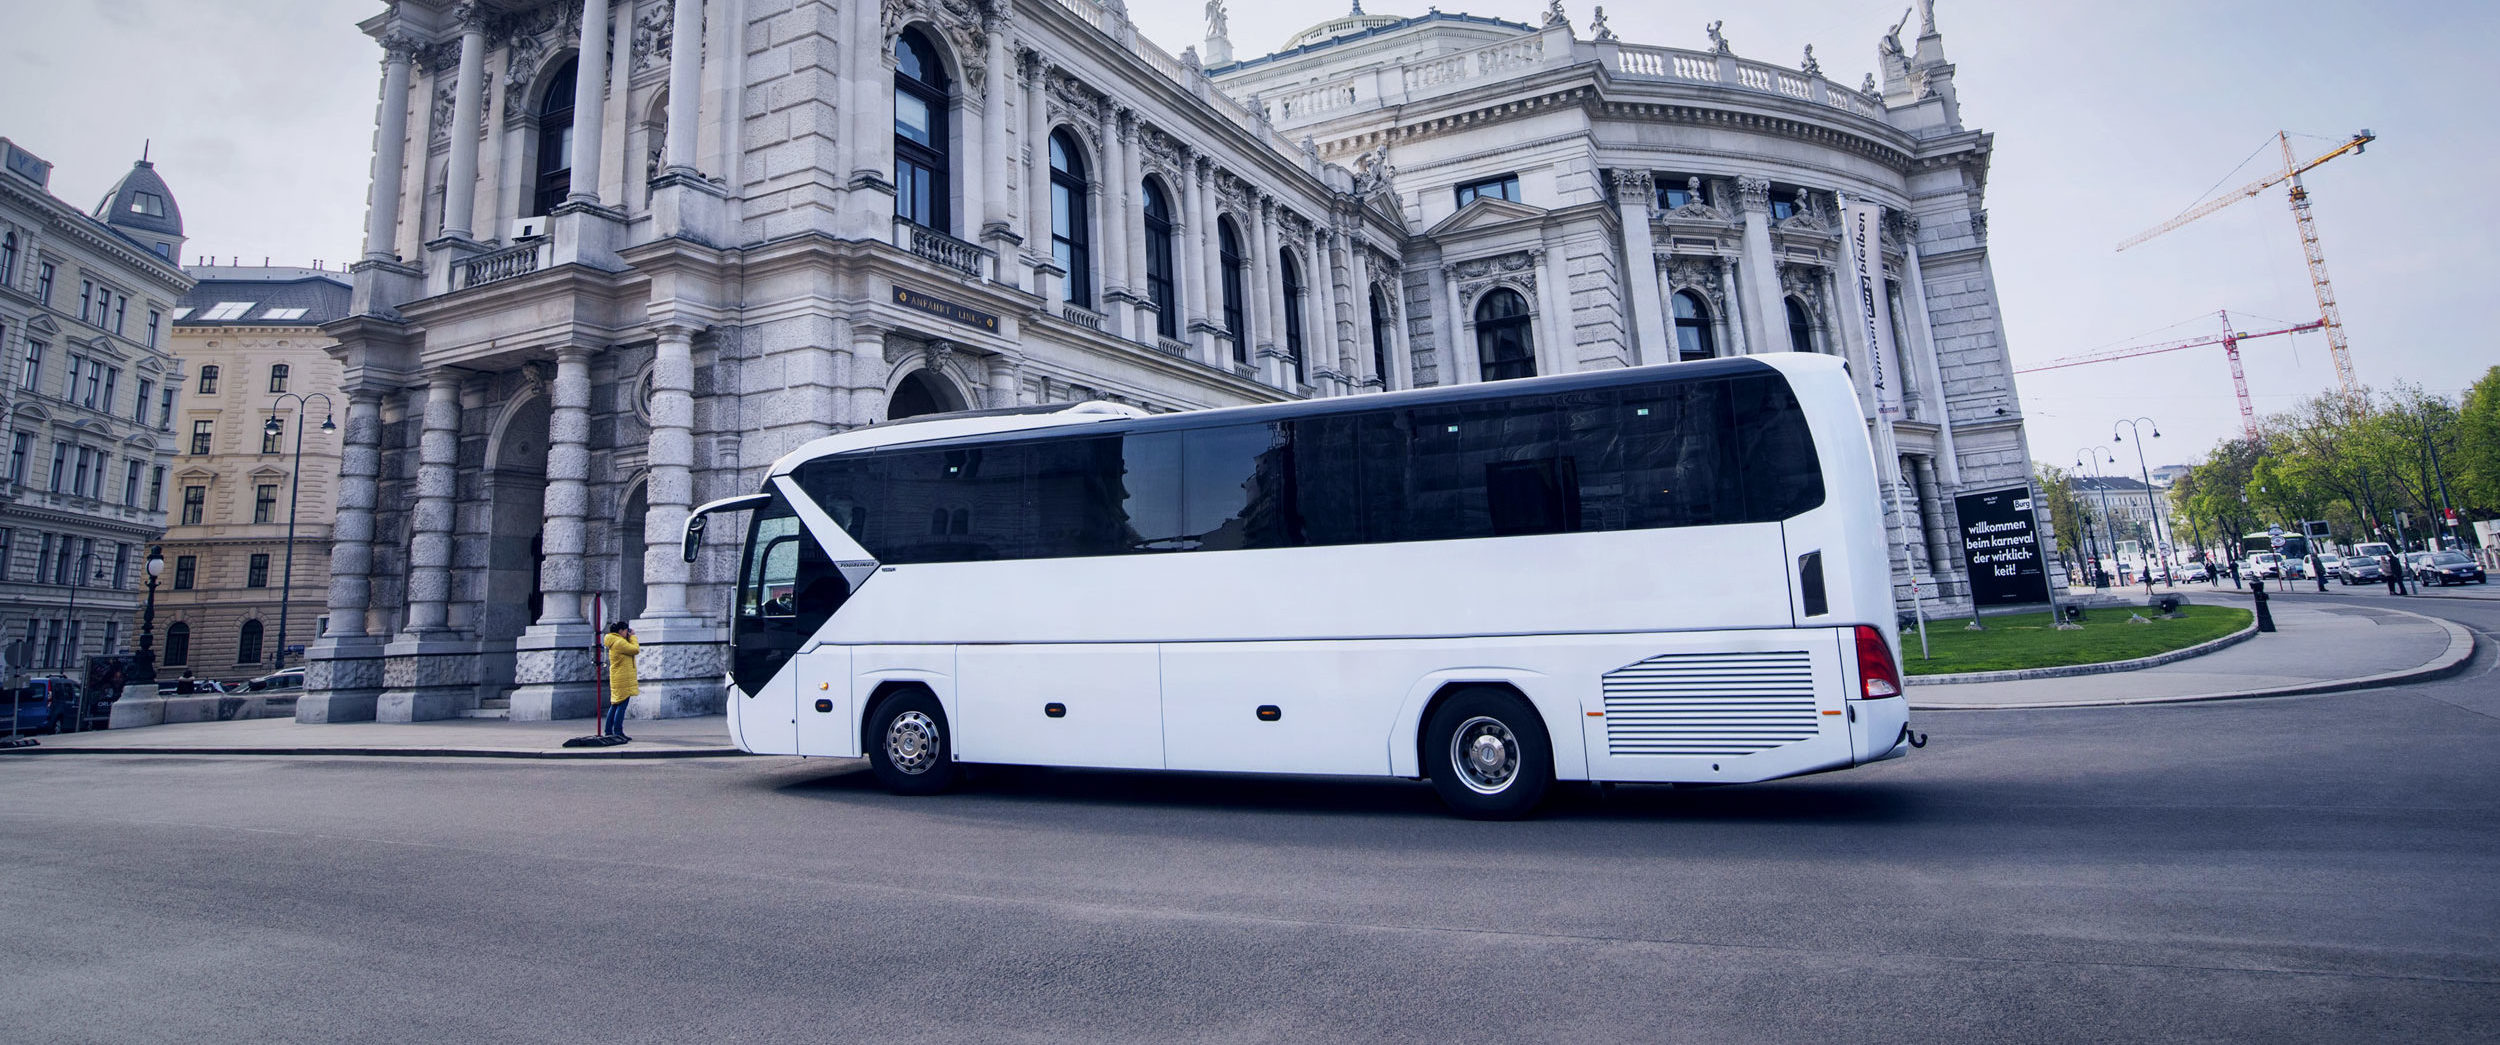 voyage bus bâtiment historique alternative